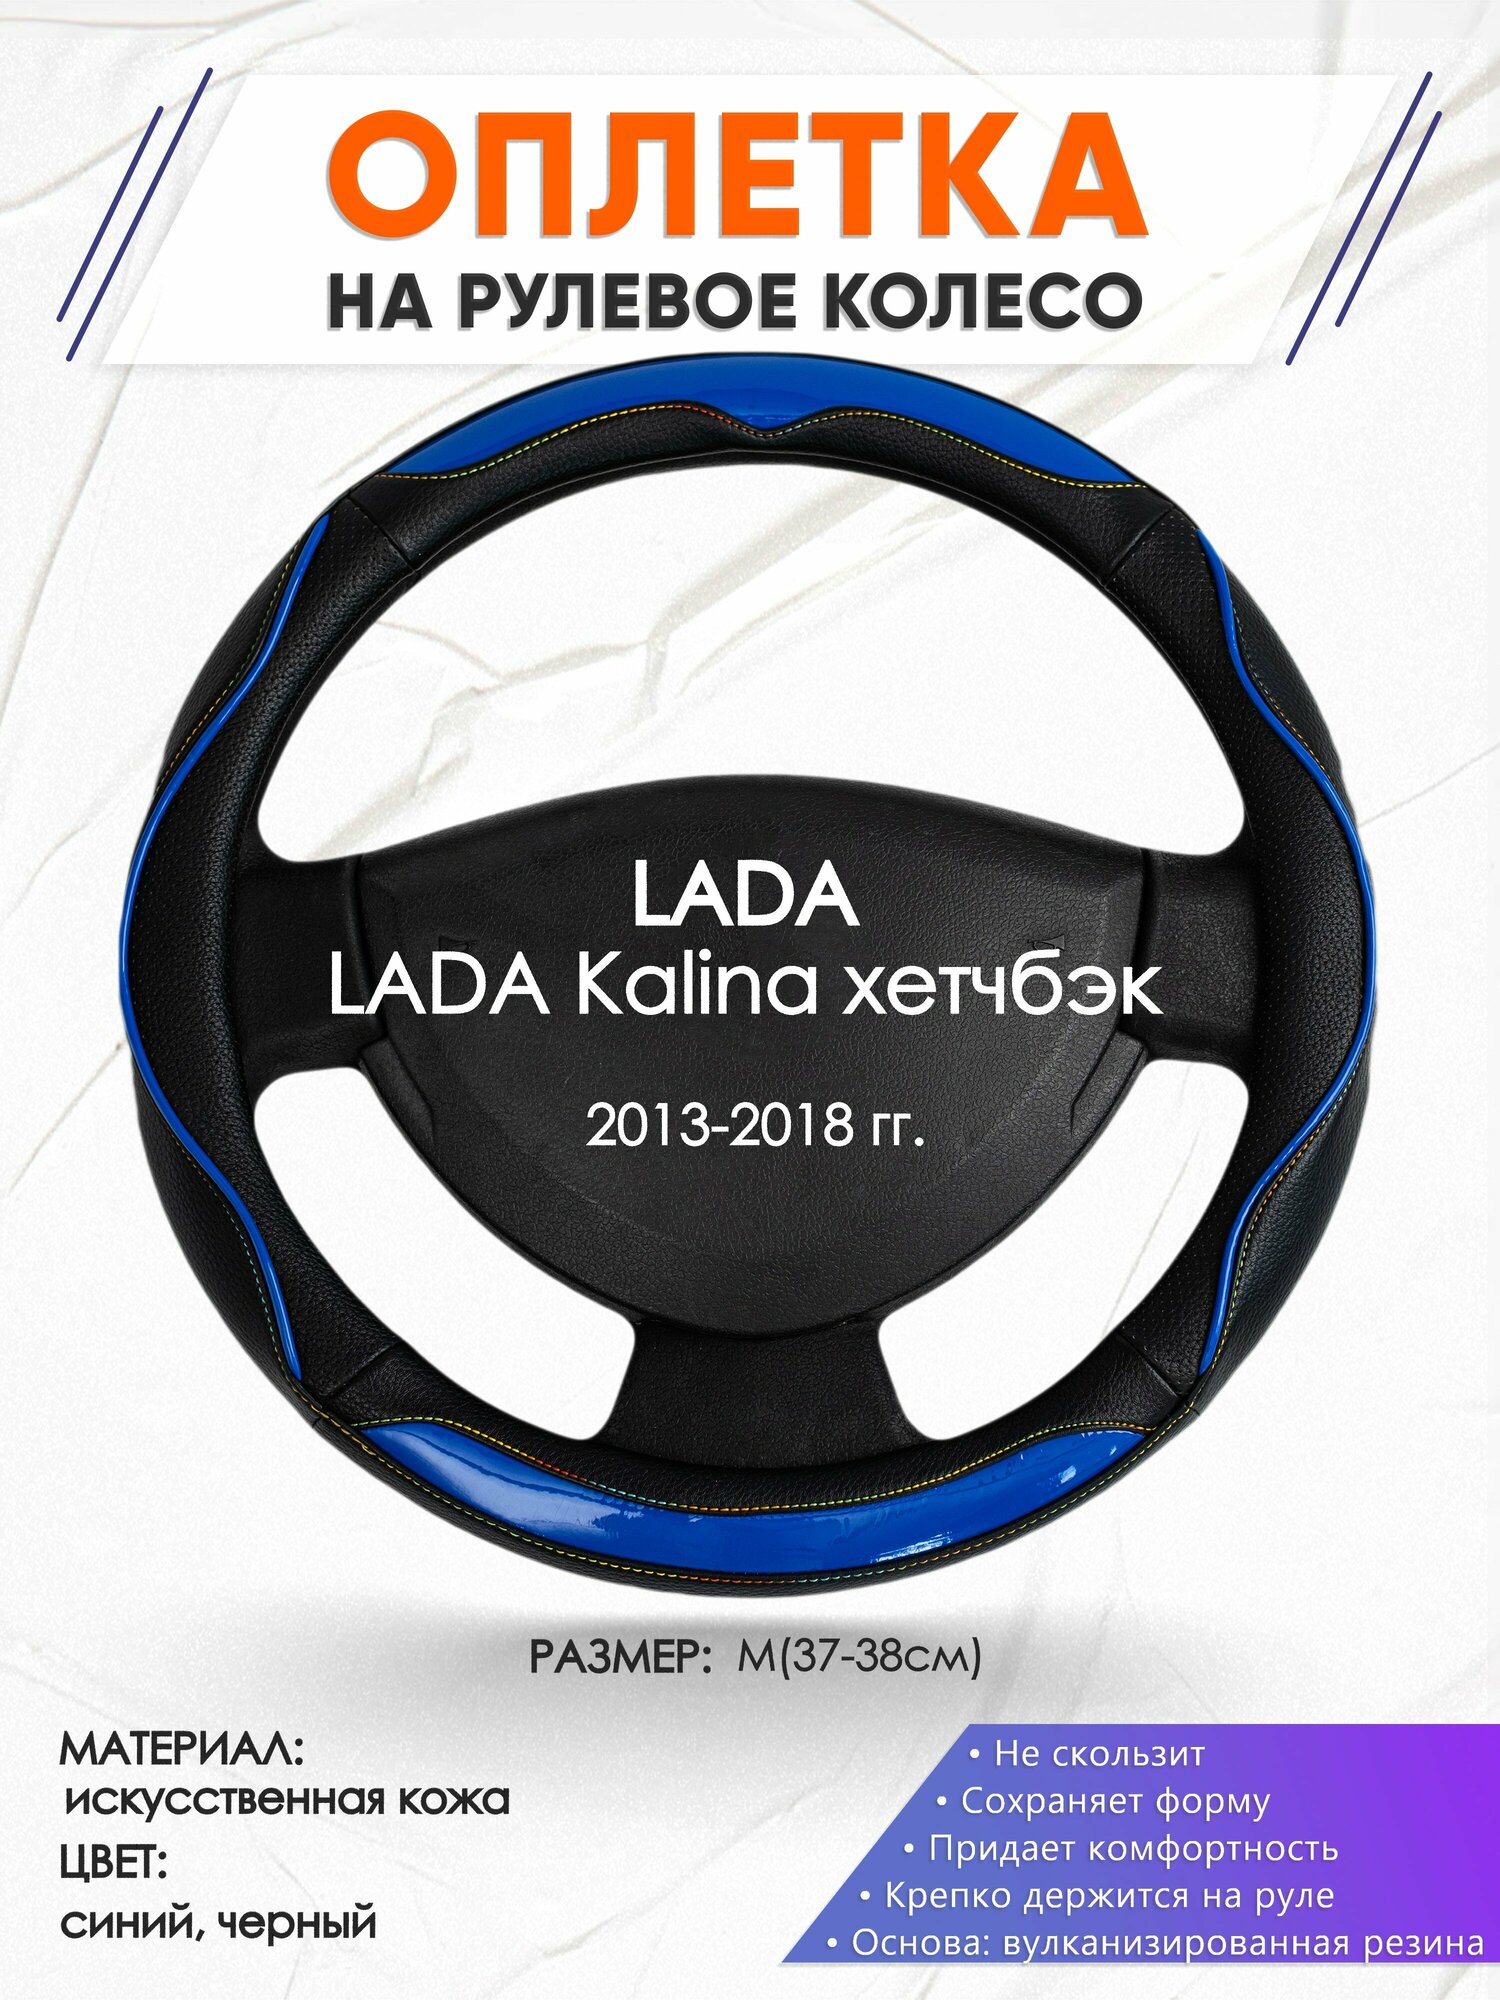 Оплетка наруль для LADA Kalina хетчбэк(Лада Калина) 2013-2018 годов выпуска, размер M(37-38см), Искусственная кожа 11